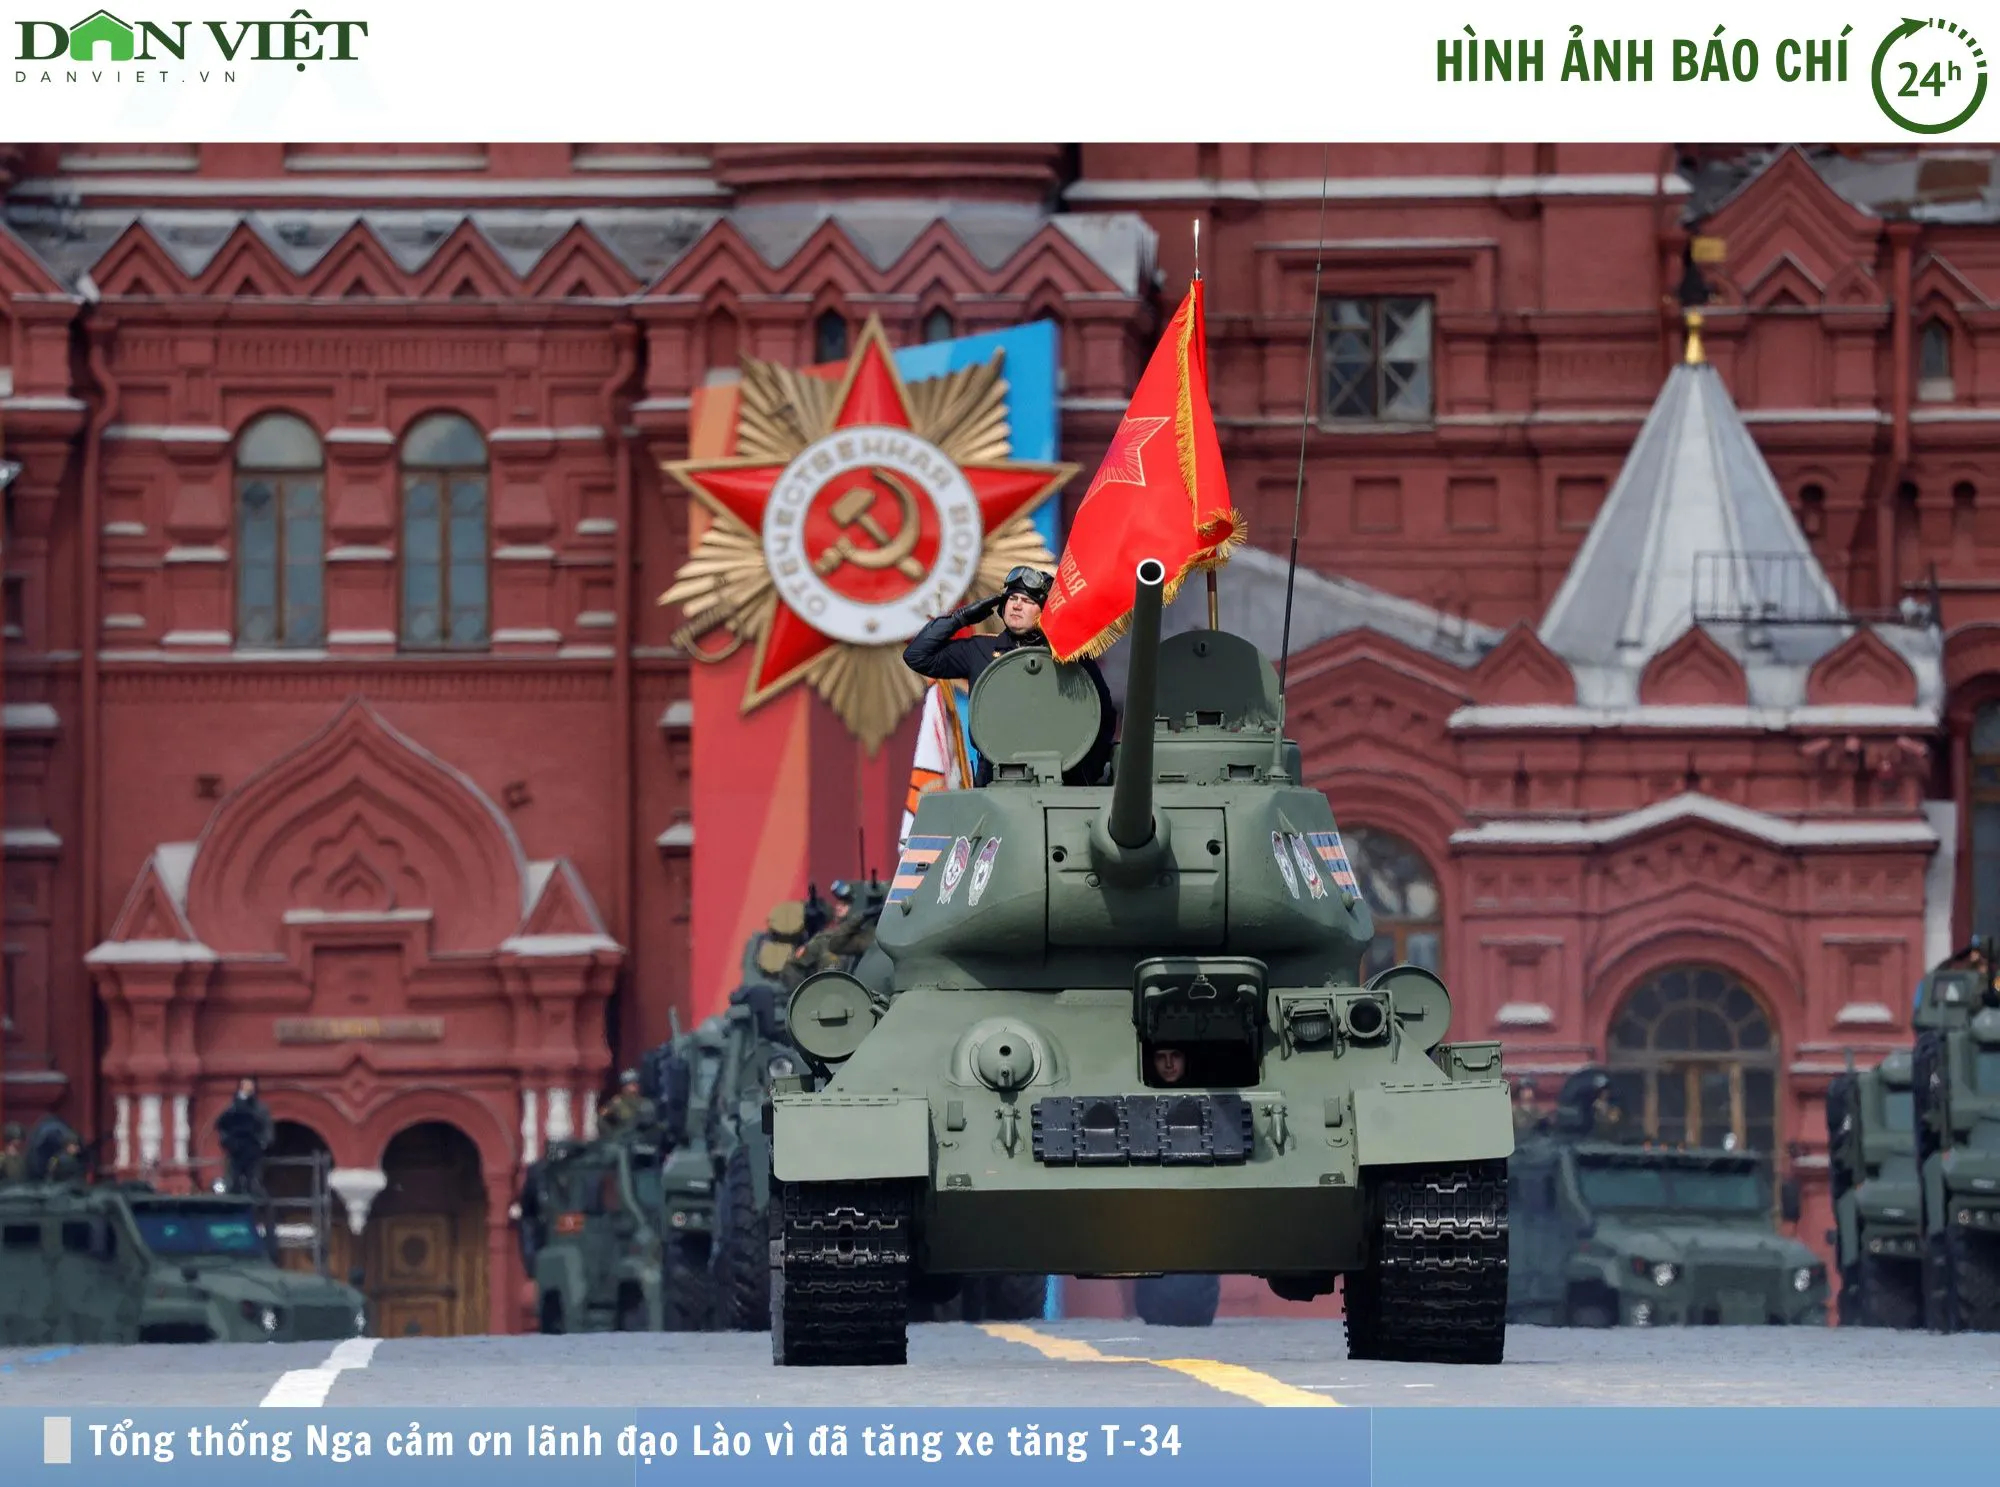 Hình ảnh báo chí 24h: Tổng thống Putin cảm ơn lãnh đạo Lào vì đã tặng xe tăng T-34- Ảnh 1.